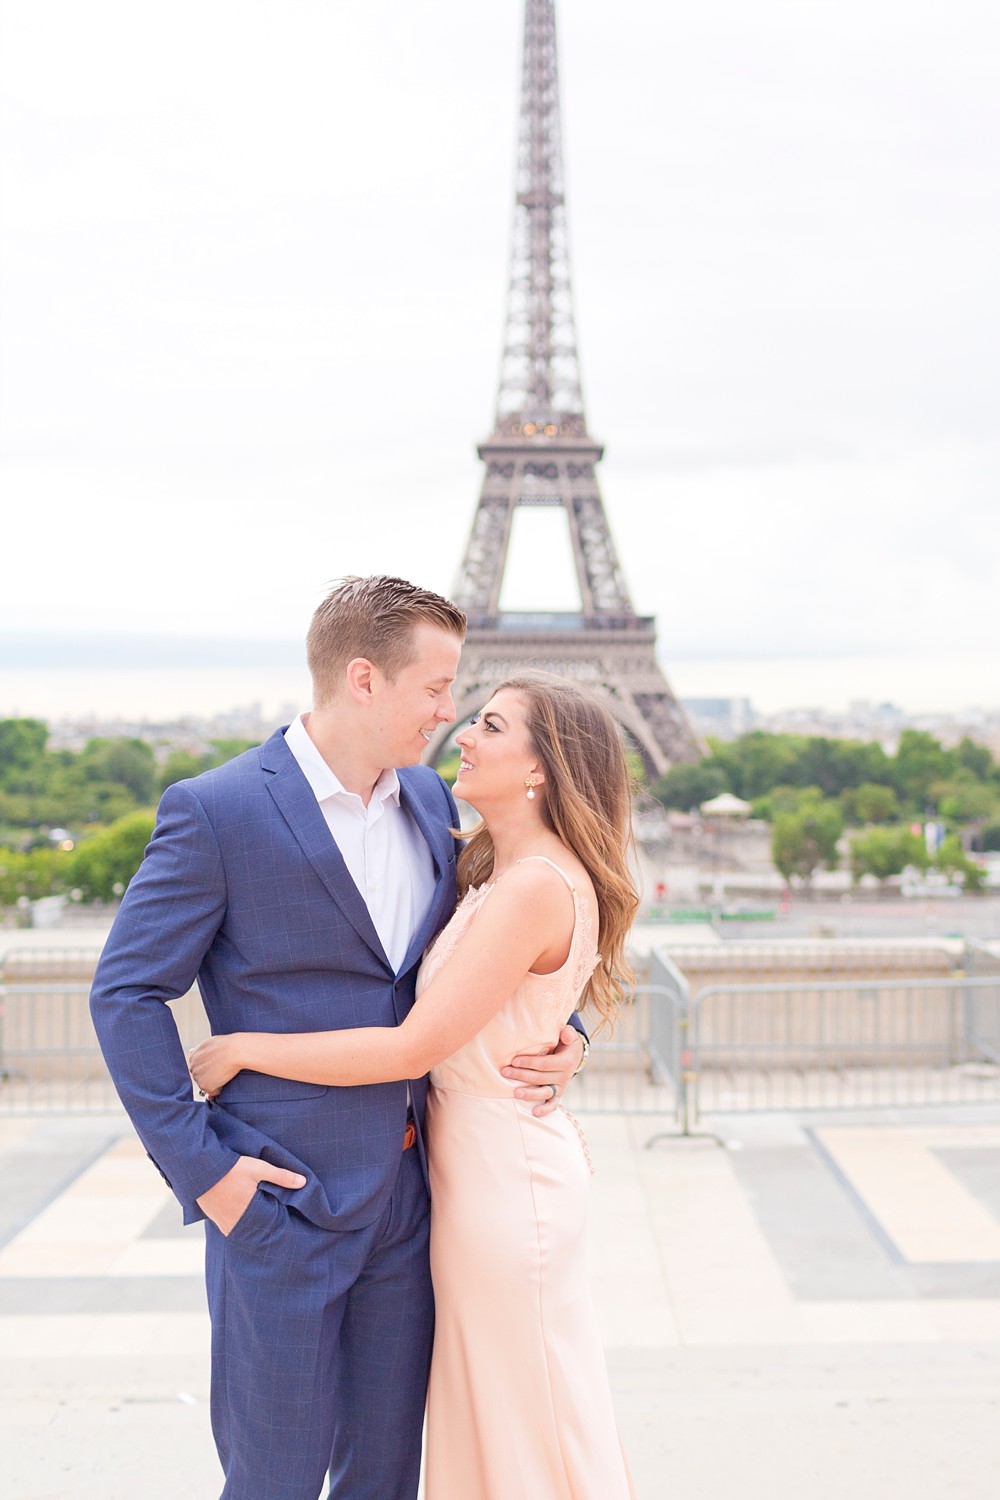 Paris France destination elopement photographer in Houston Texas.